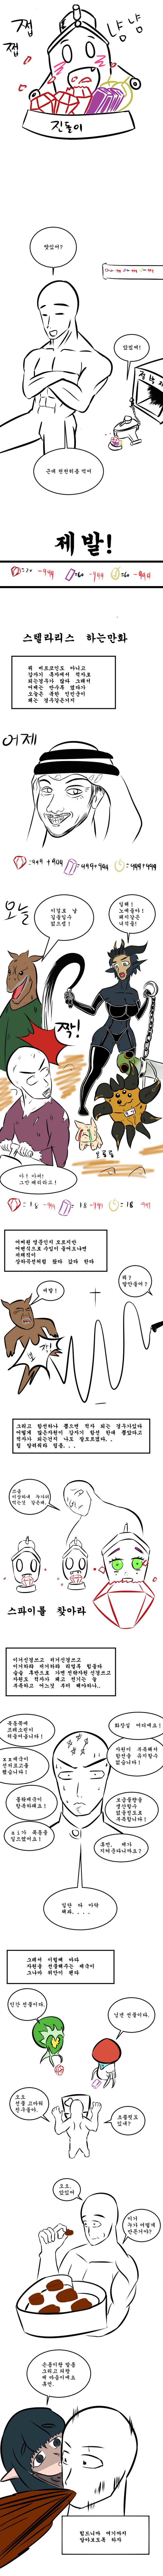 스텔라리스 하는 만화 자원편 팬픽 패러디만화 루리웹 - 구버전 roblox korea 우측 가슴 핀 roblox